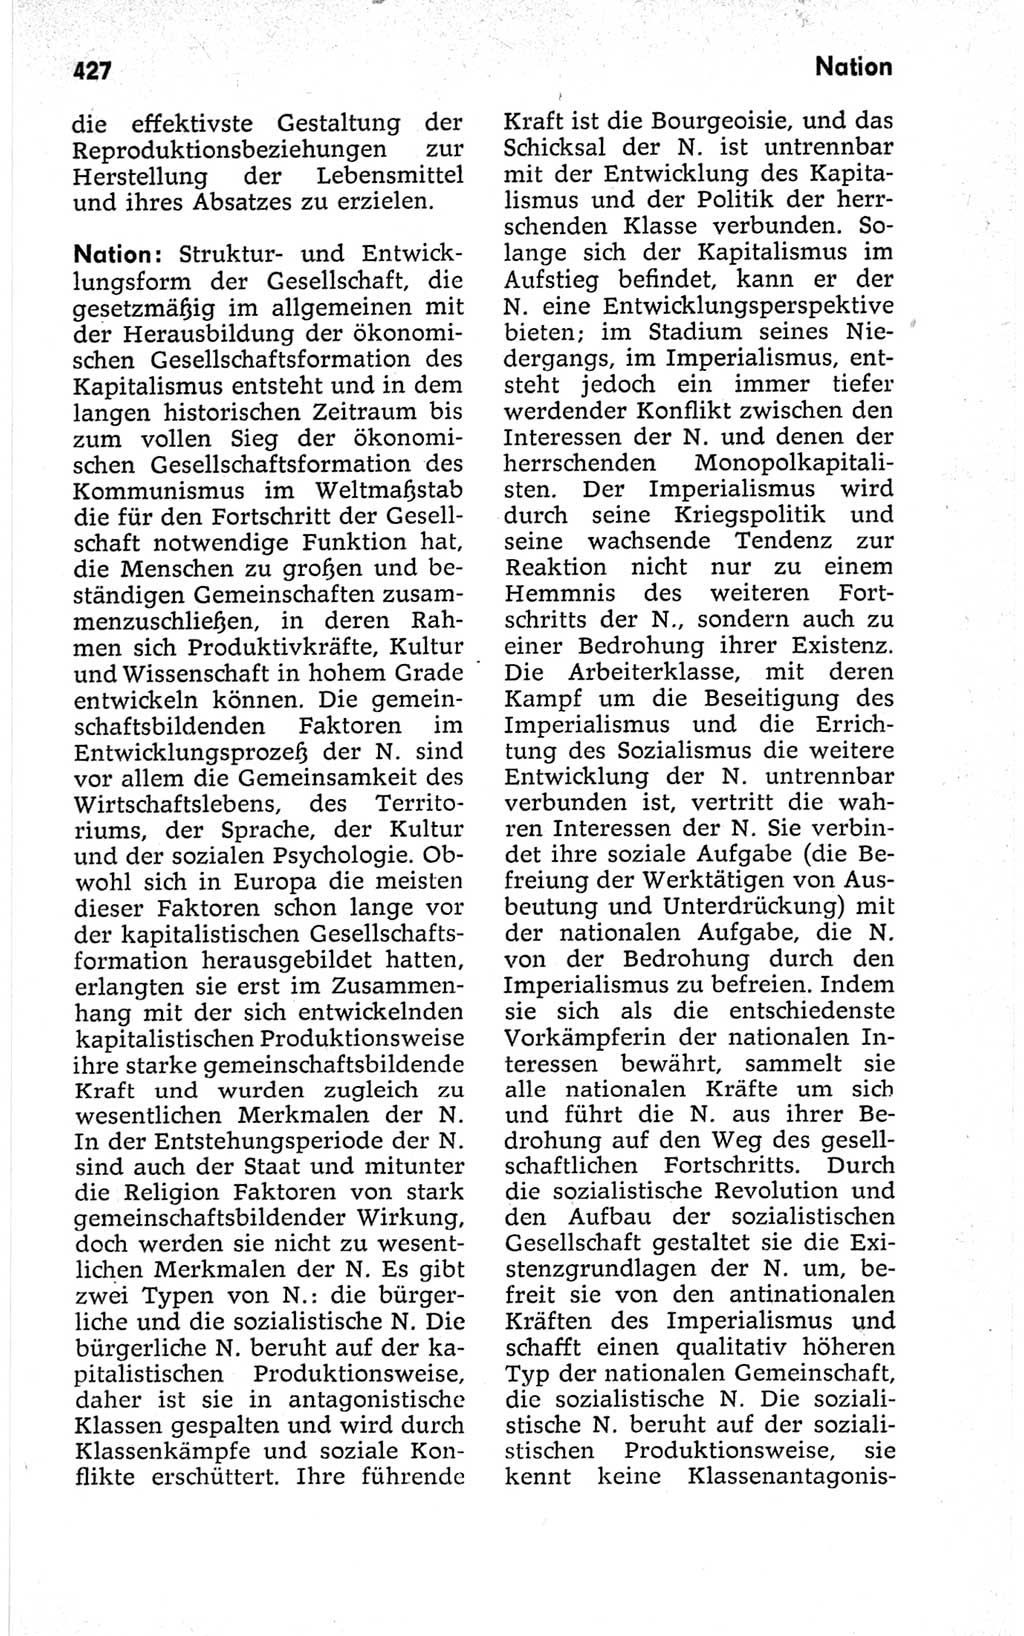 Kleines politisches Wörterbuch [Deutsche Demokratische Republik (DDR)] 1967, Seite 427 (Kl. pol. Wb. DDR 1967, S. 427)